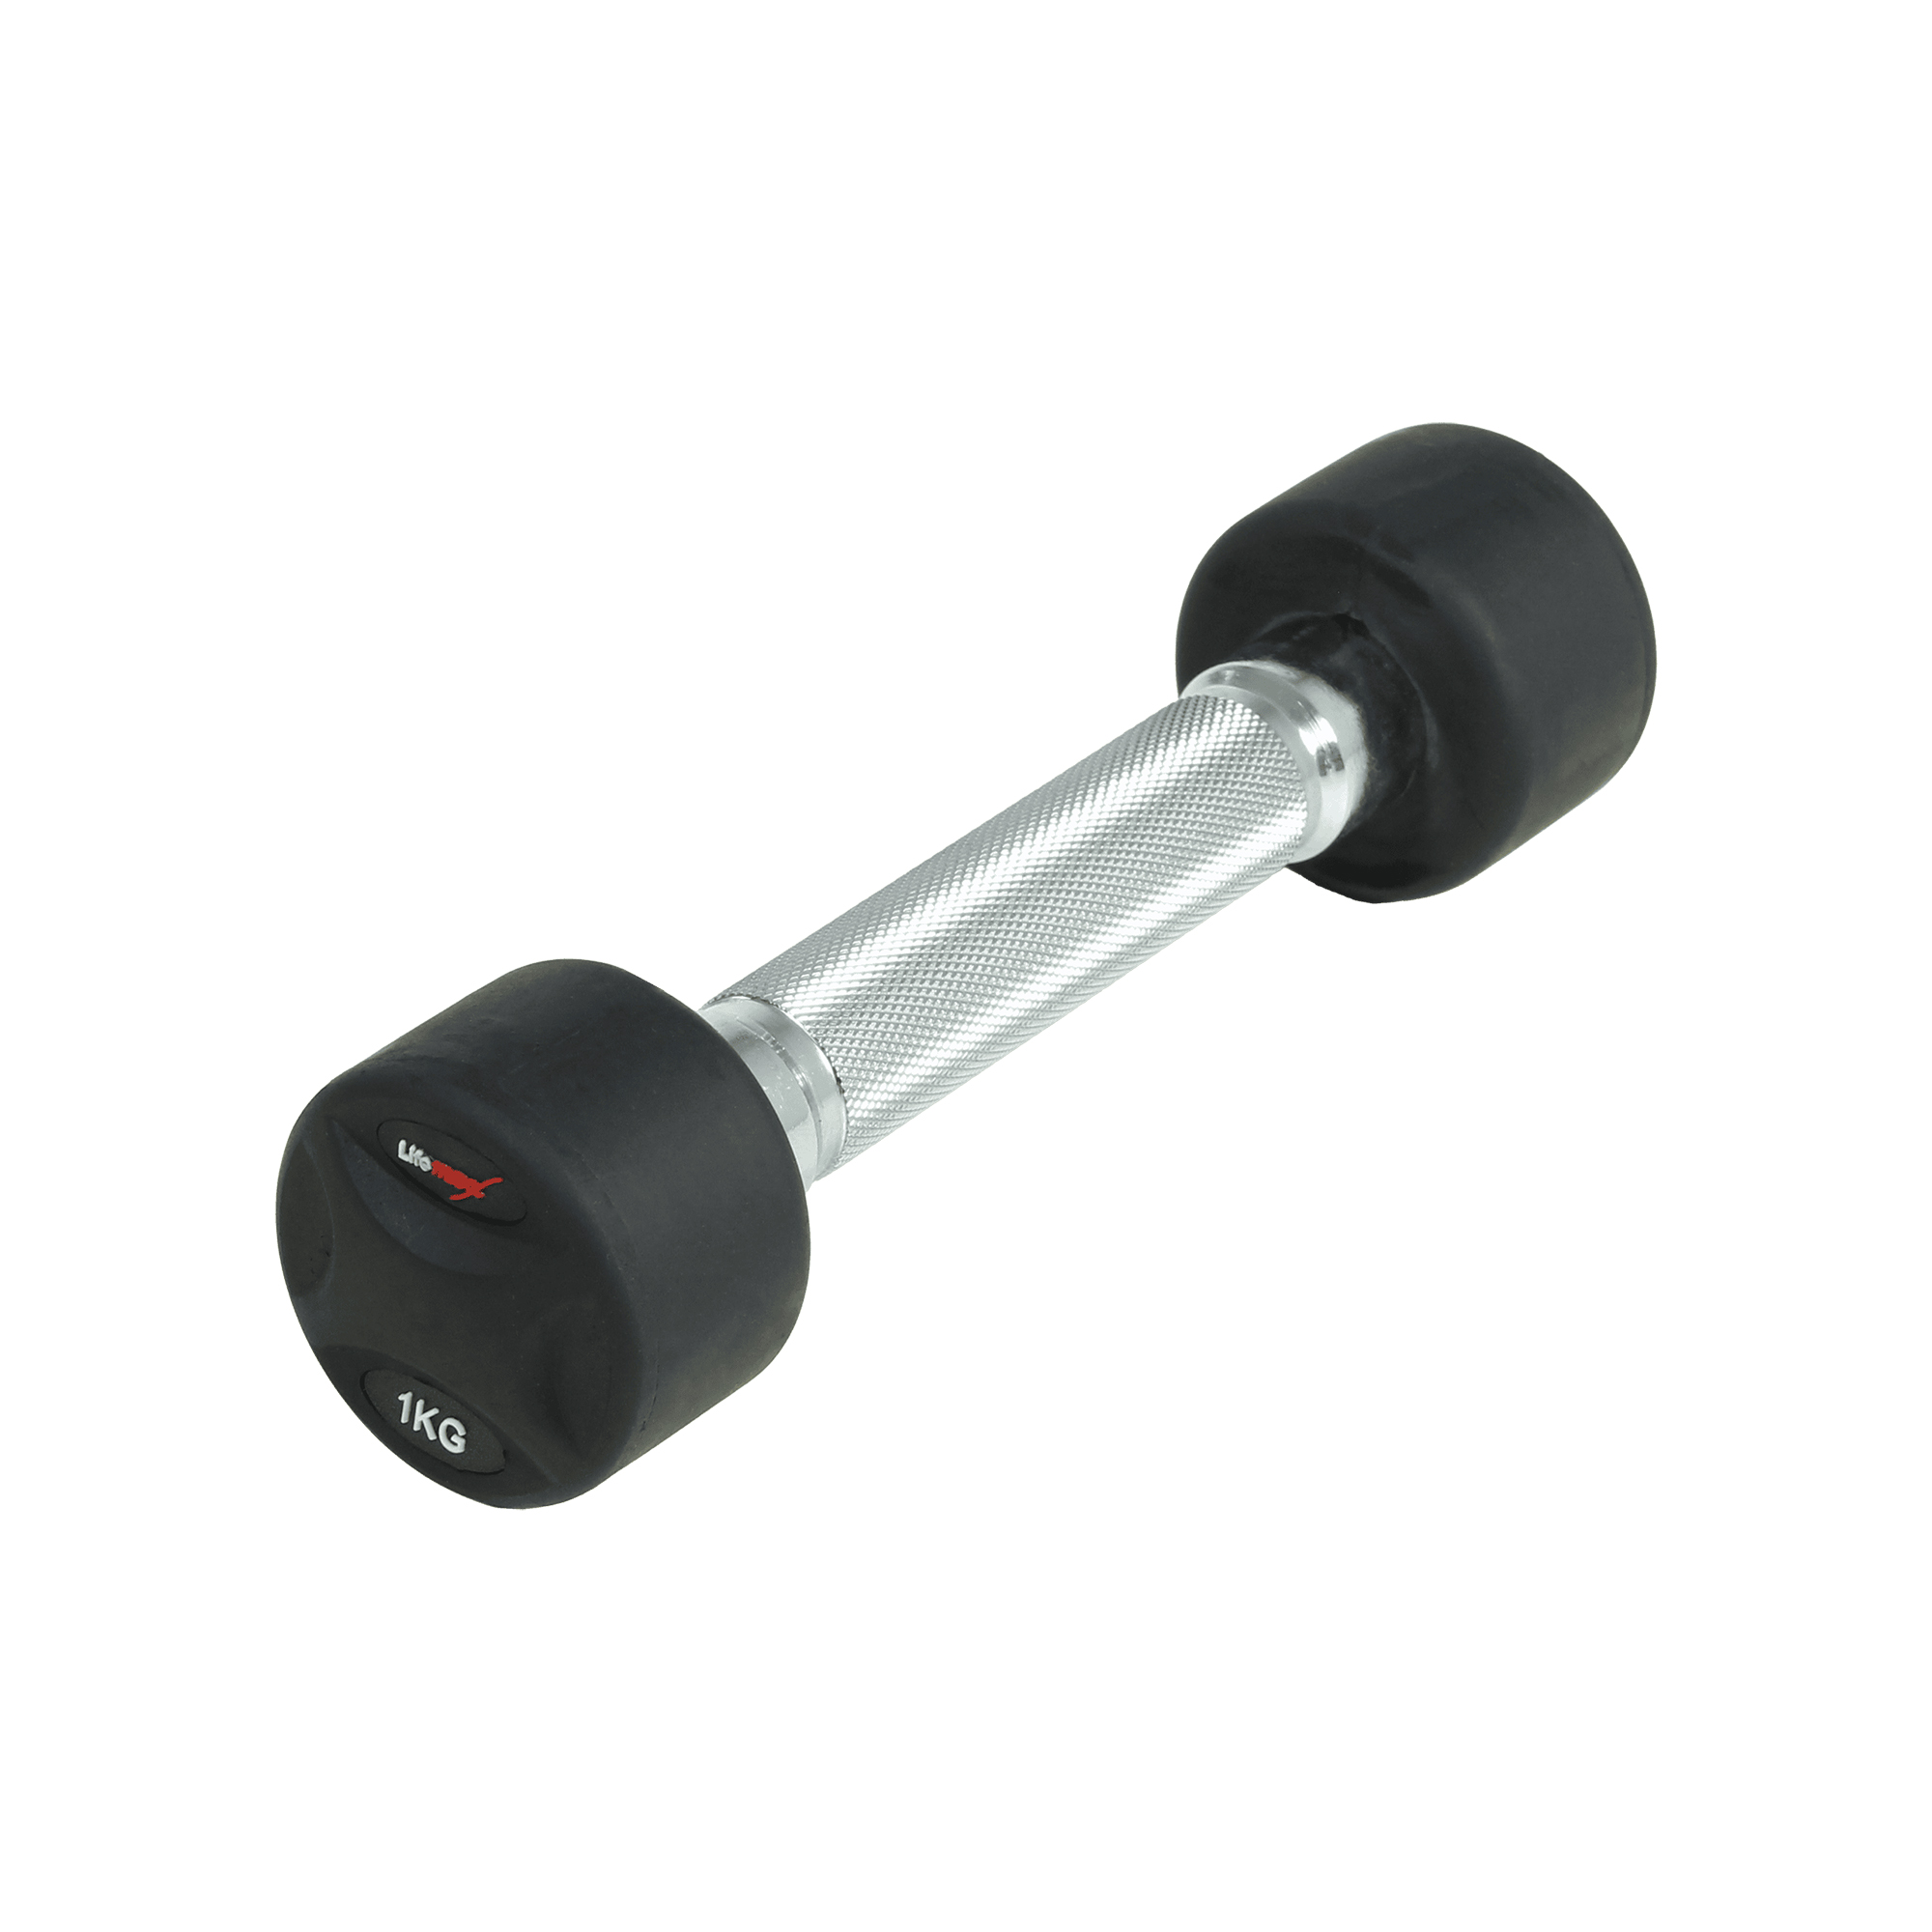 Brug Lifemaxx fast håndvægt 1 kg - Rund håndvægt med riflet greb - Lavet i støbejern beklædt med gummi - Til crossfit og styrketræning til en forbedret oplevelse